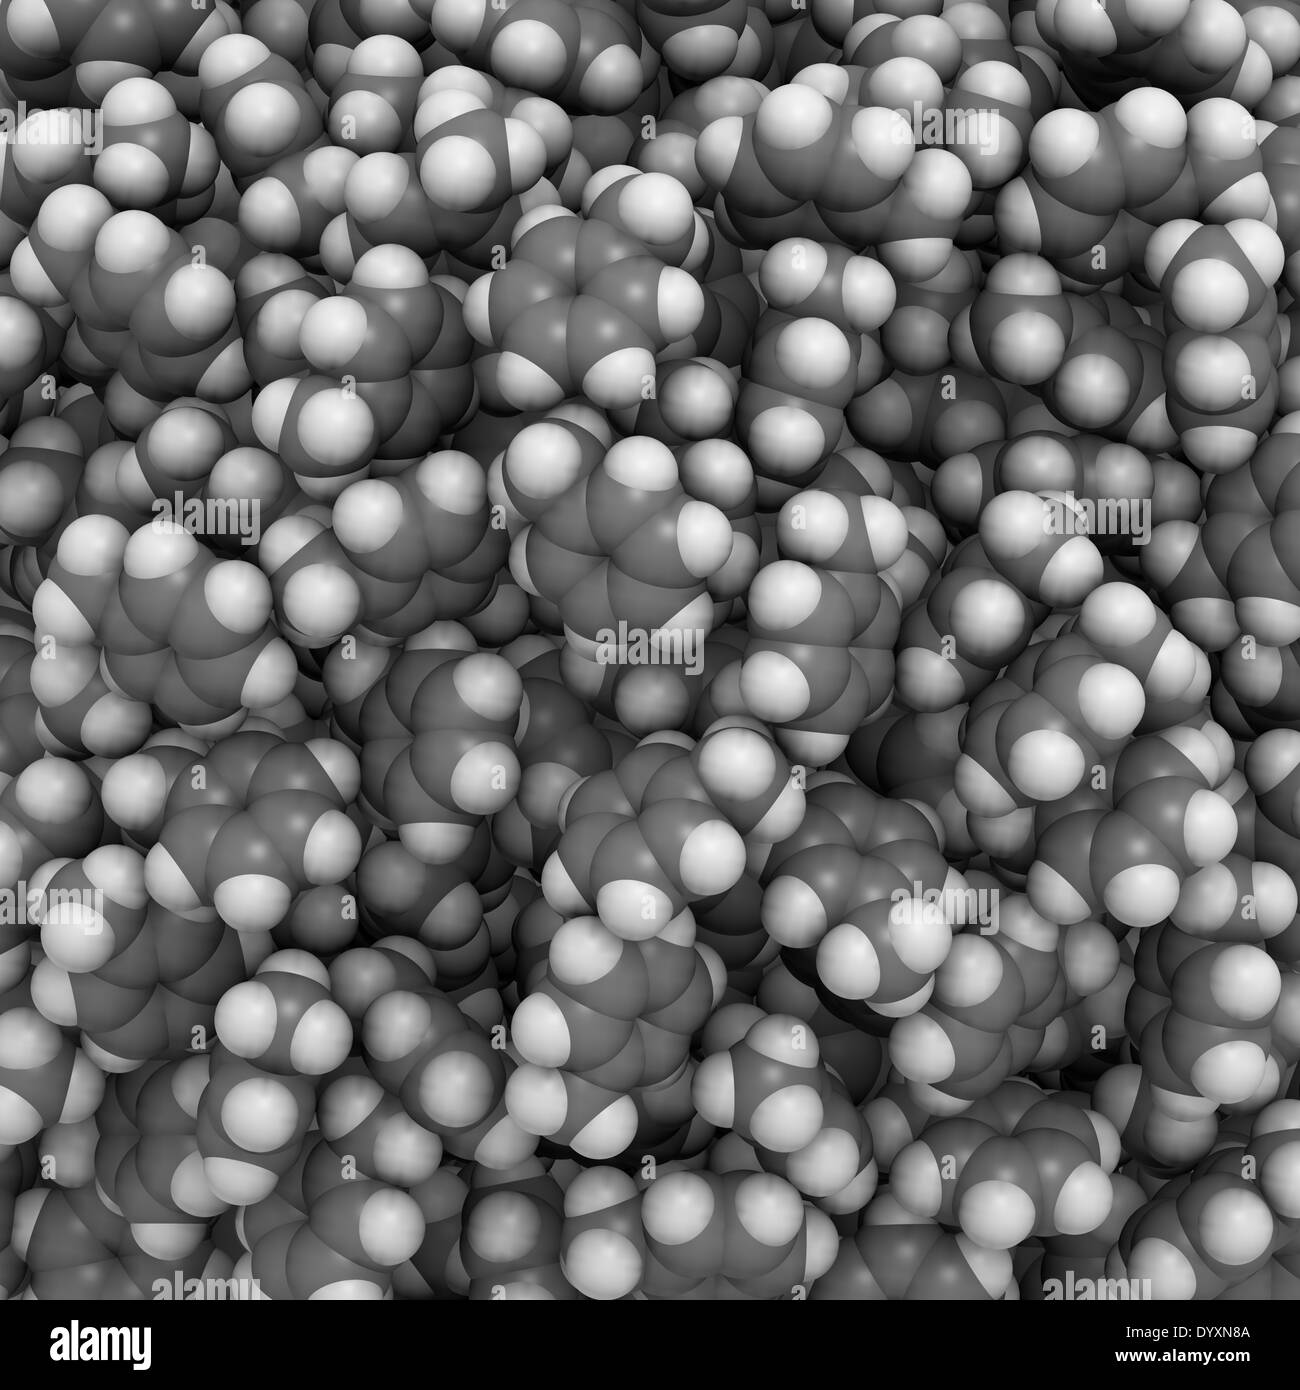 Molekulare Zusammensetzung der flüssigen Toluol - Detail. Atome werden als Kugeln mit konventionellen Farbkodierung dargestellt. Stockfoto